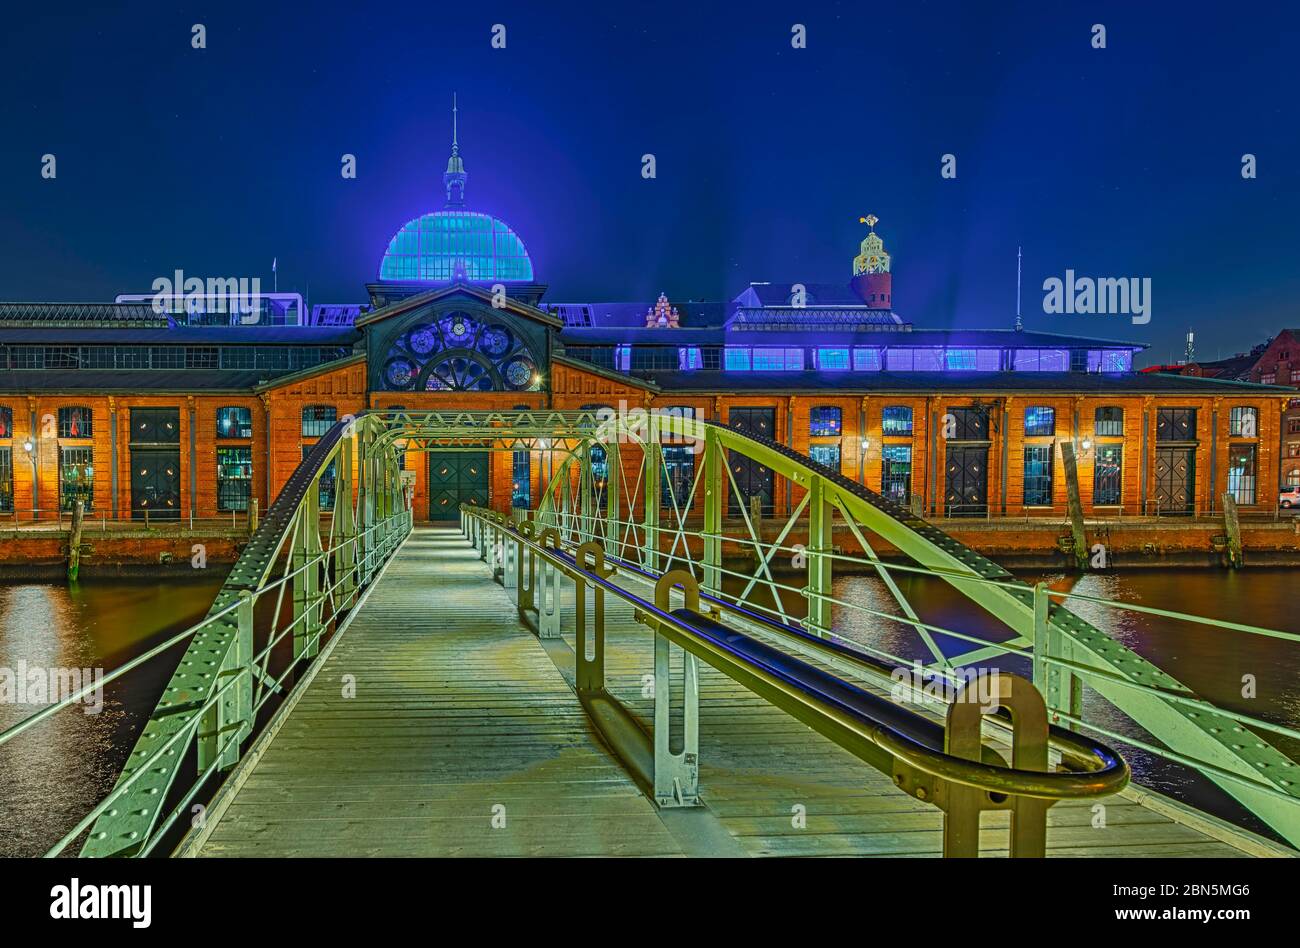 Ponte sull'Elba, centro eventi, ex sala d'aste di pesce, illuminato, tiro notturno, Altona, Amburgo, Germania Foto Stock